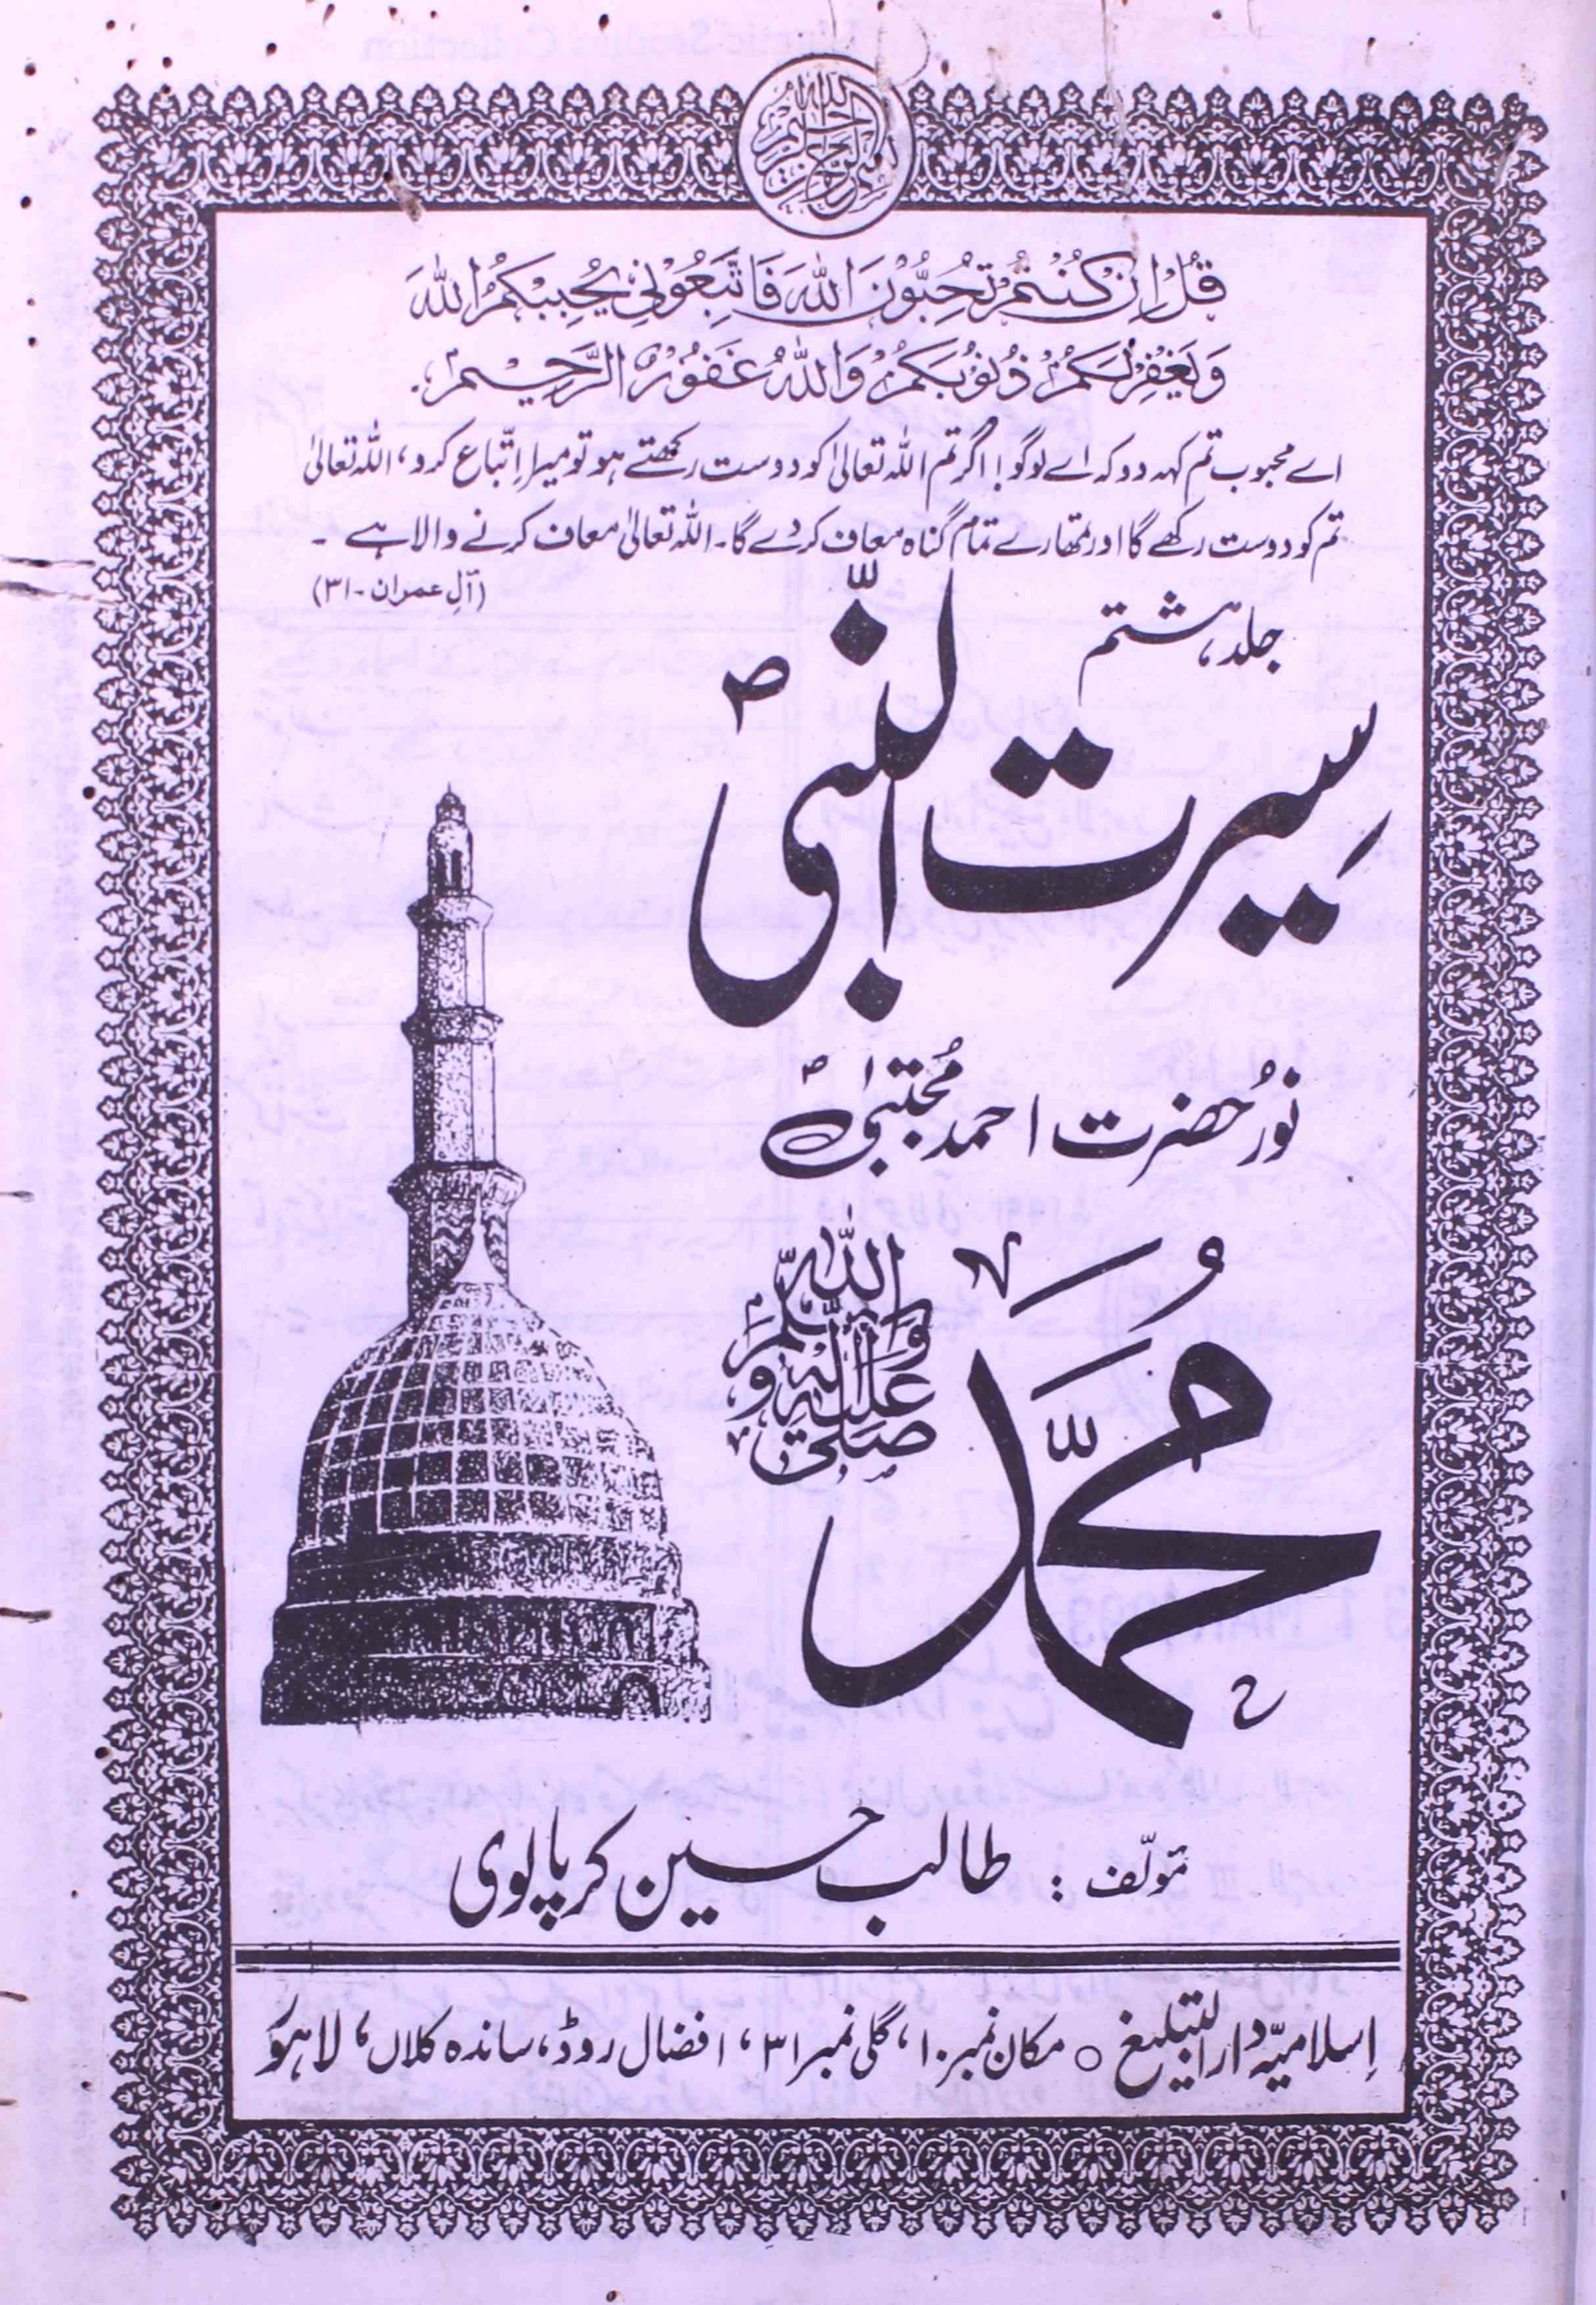 Seeratun Nabi Noor Hazrat Ahmad Mujtaba Mohammad S.A.W